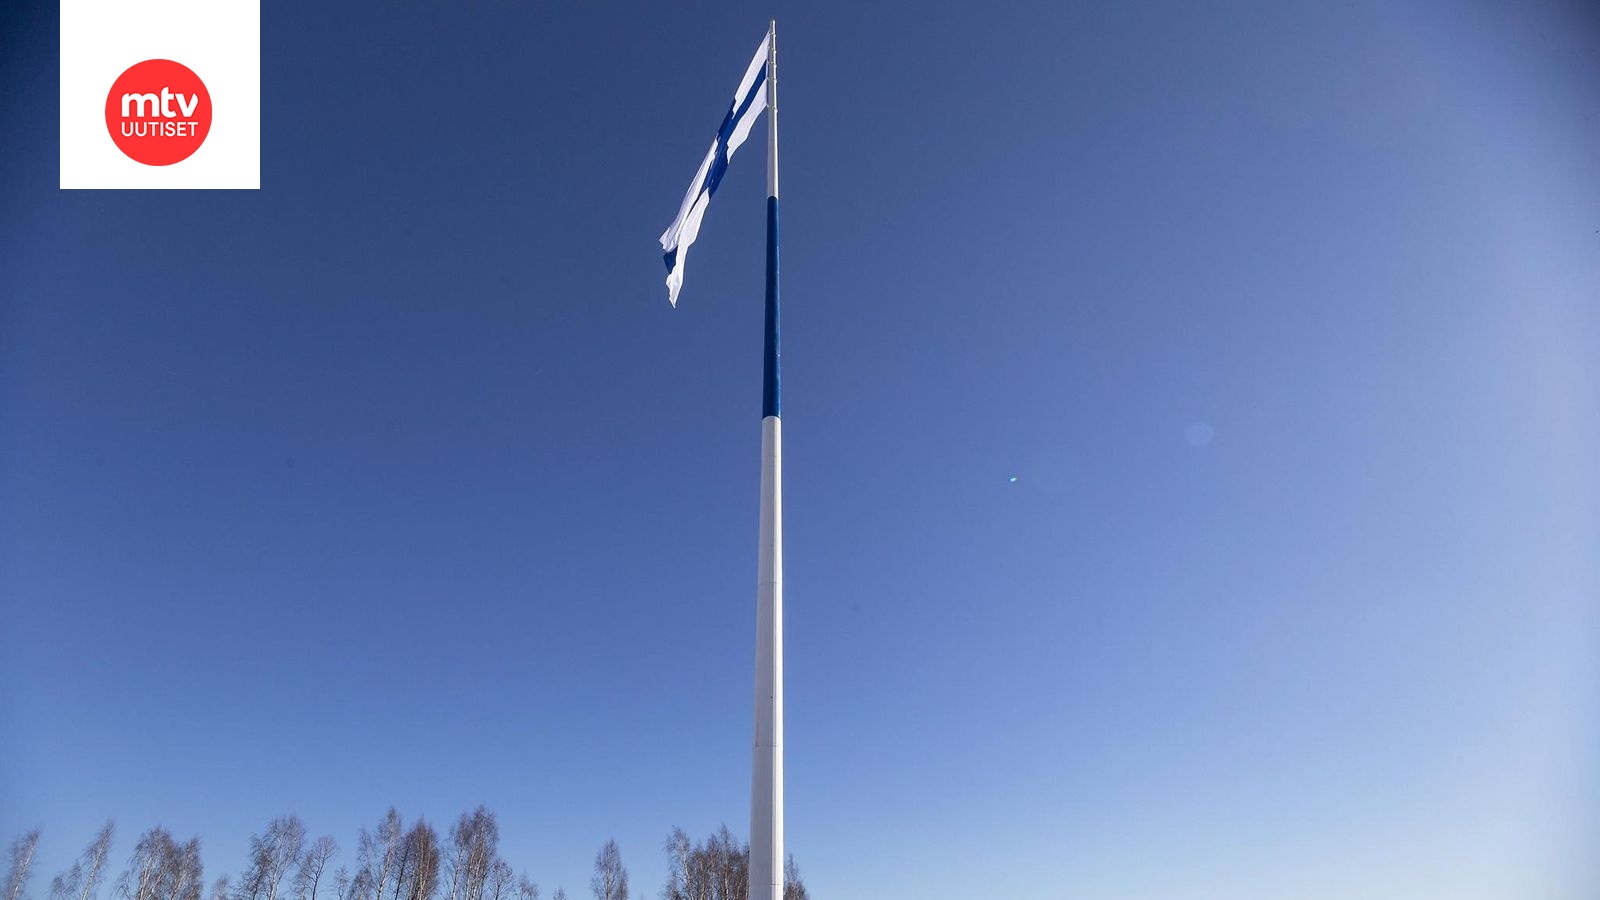 Maailman suurin Suomen lippu saa jatkossa liehua yötä päivää, kunhan ei  tuule liian kovaa – Haminan suurlippusalko sai pysyvän käyttöluvan -  